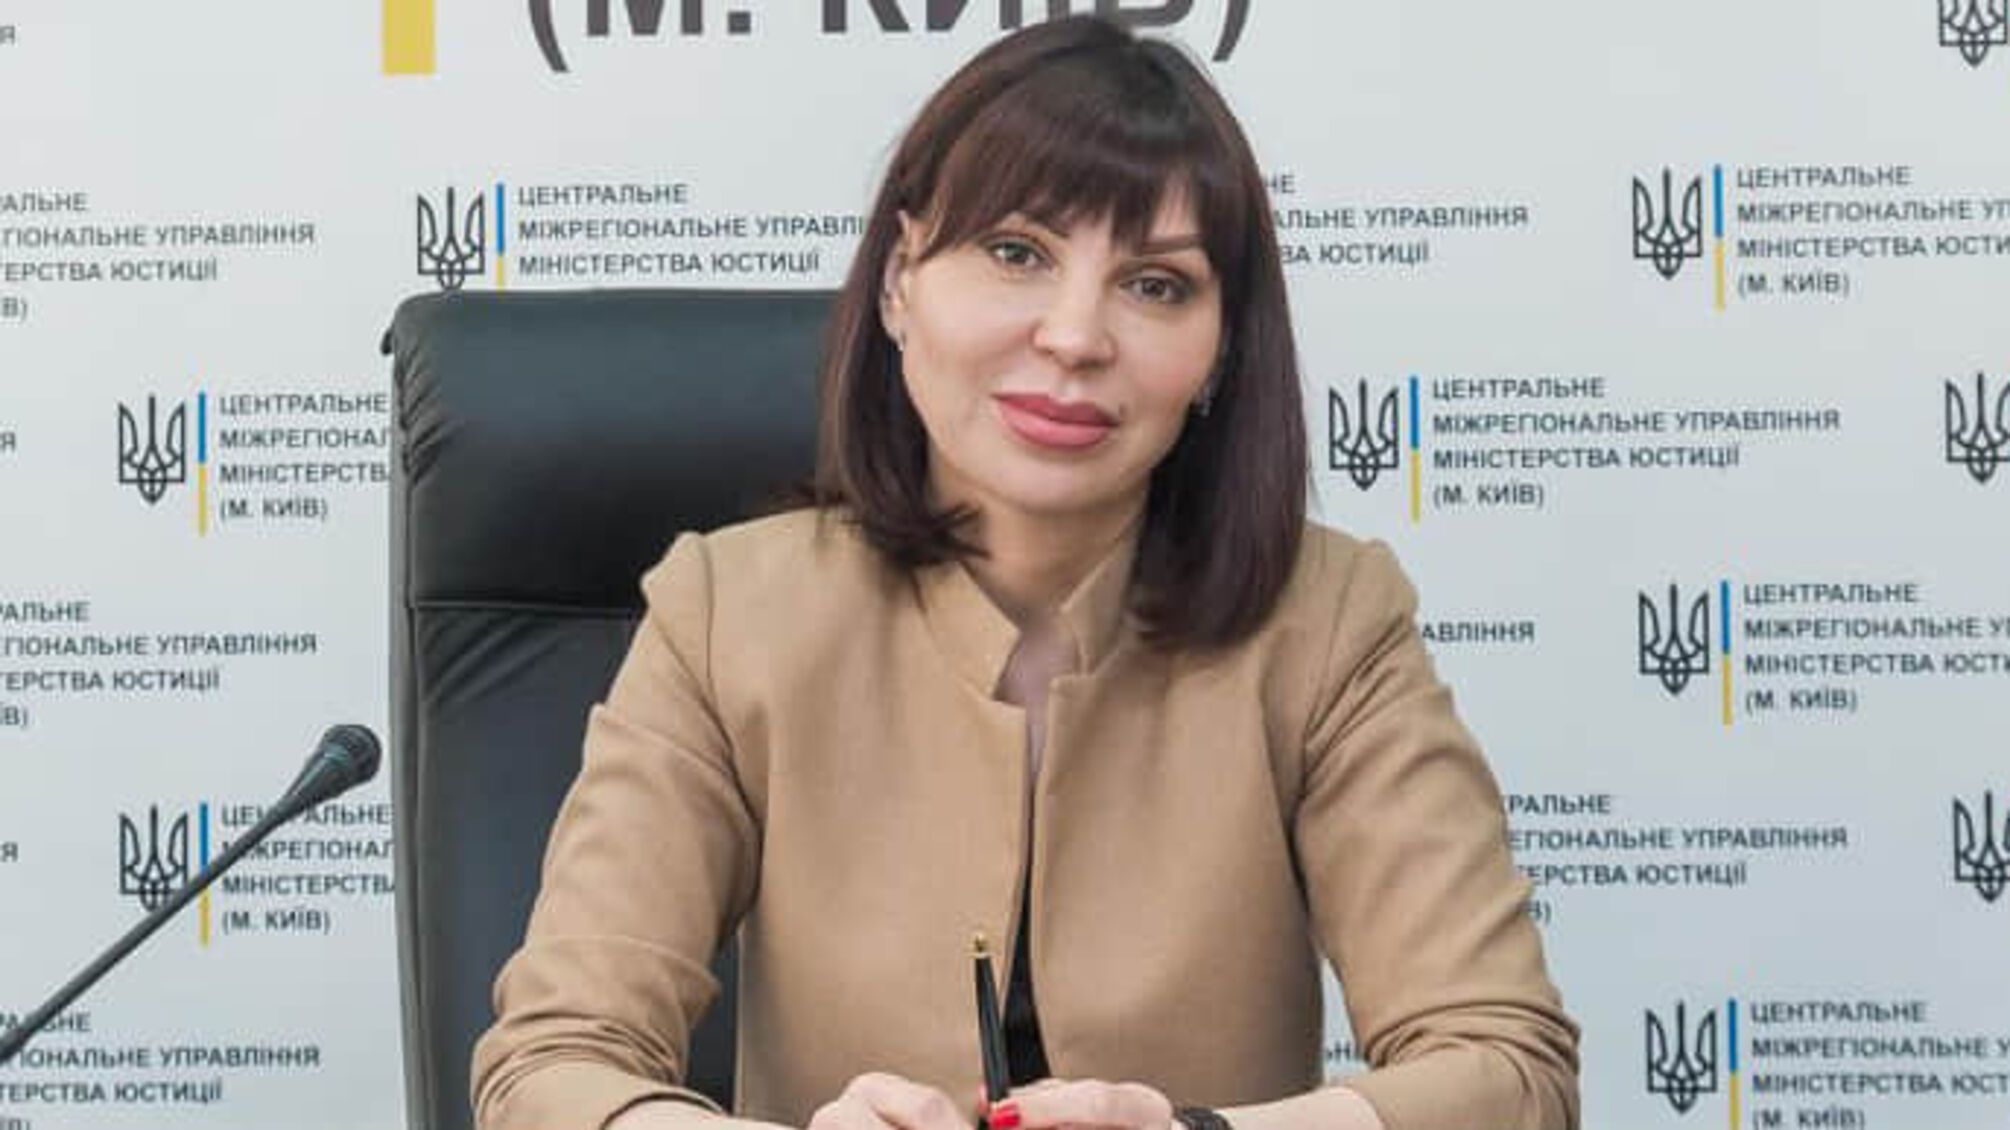 Не отмазалась: суд подтвердил гражданство россии у экс-чиновницы Минюста